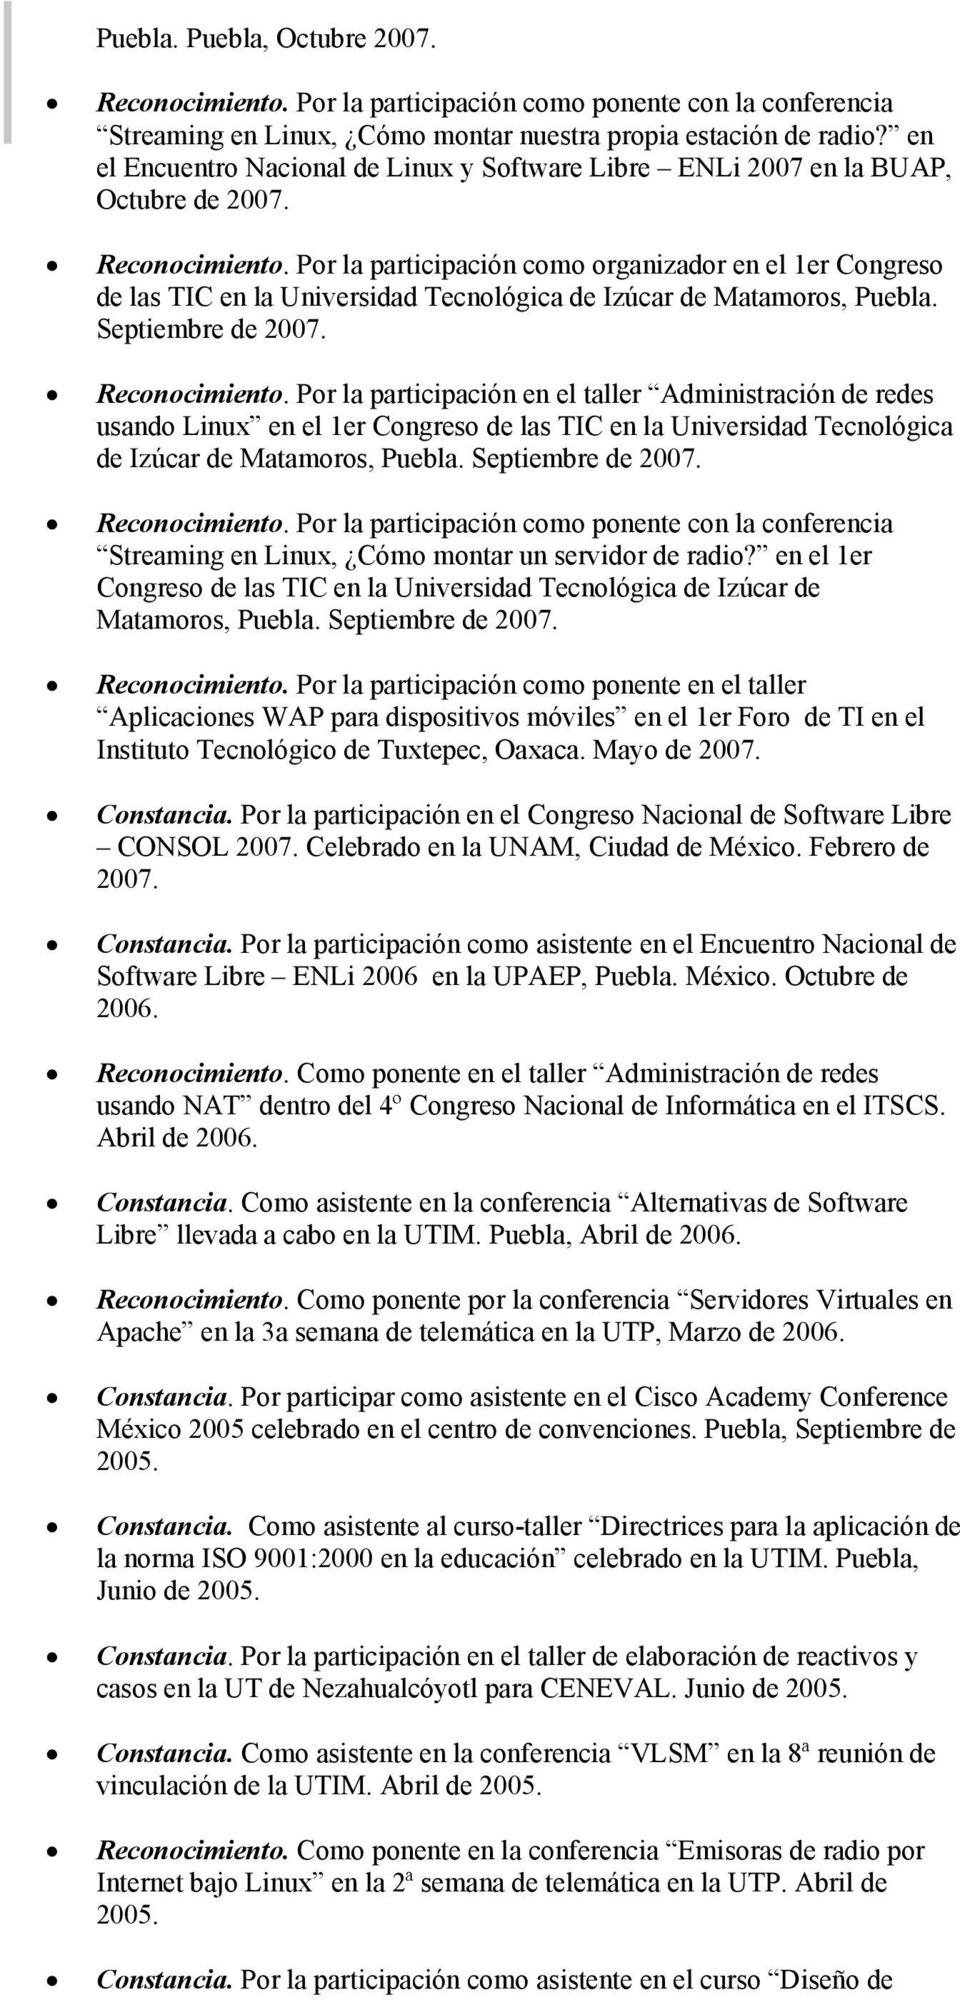 Por la participación en el taller Administración de redes usando Linux en el 1er Congreso de las TIC en la Universidad Tecnológica de Izúcar de Matamoros, Puebla. Septiembre de 2007.